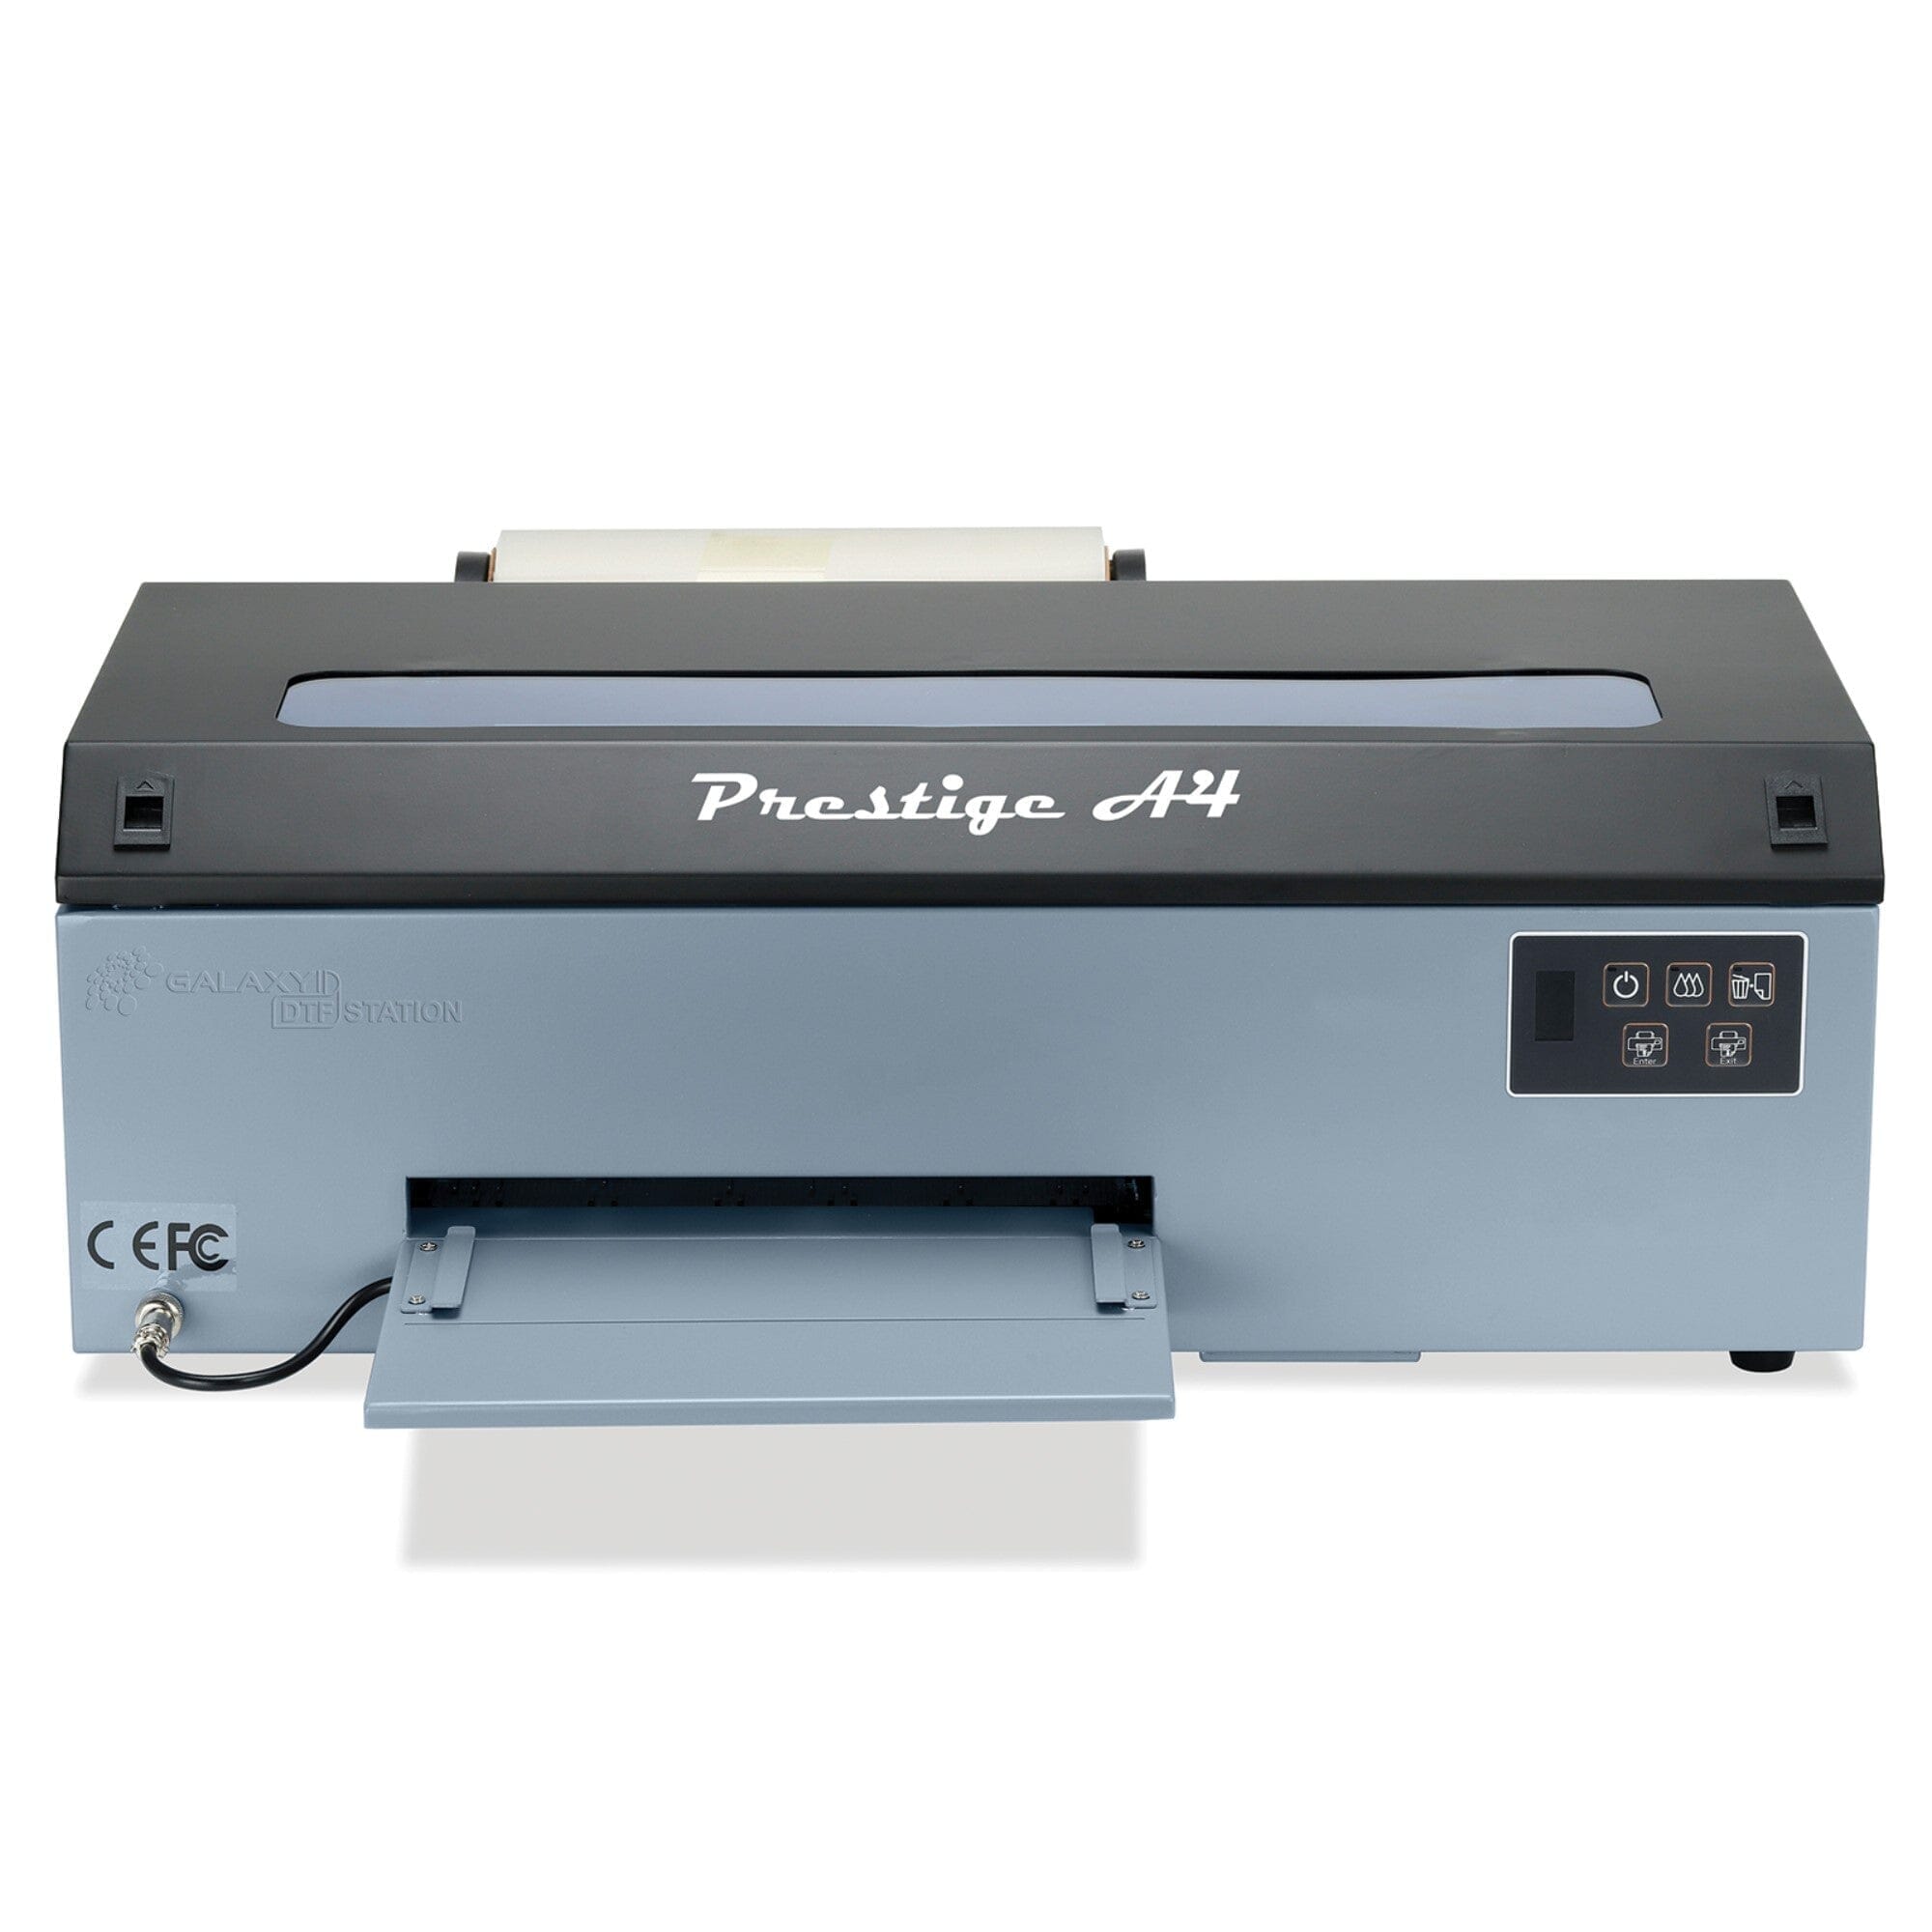 Prestige A4 DTF Printer & Shaker Bundle